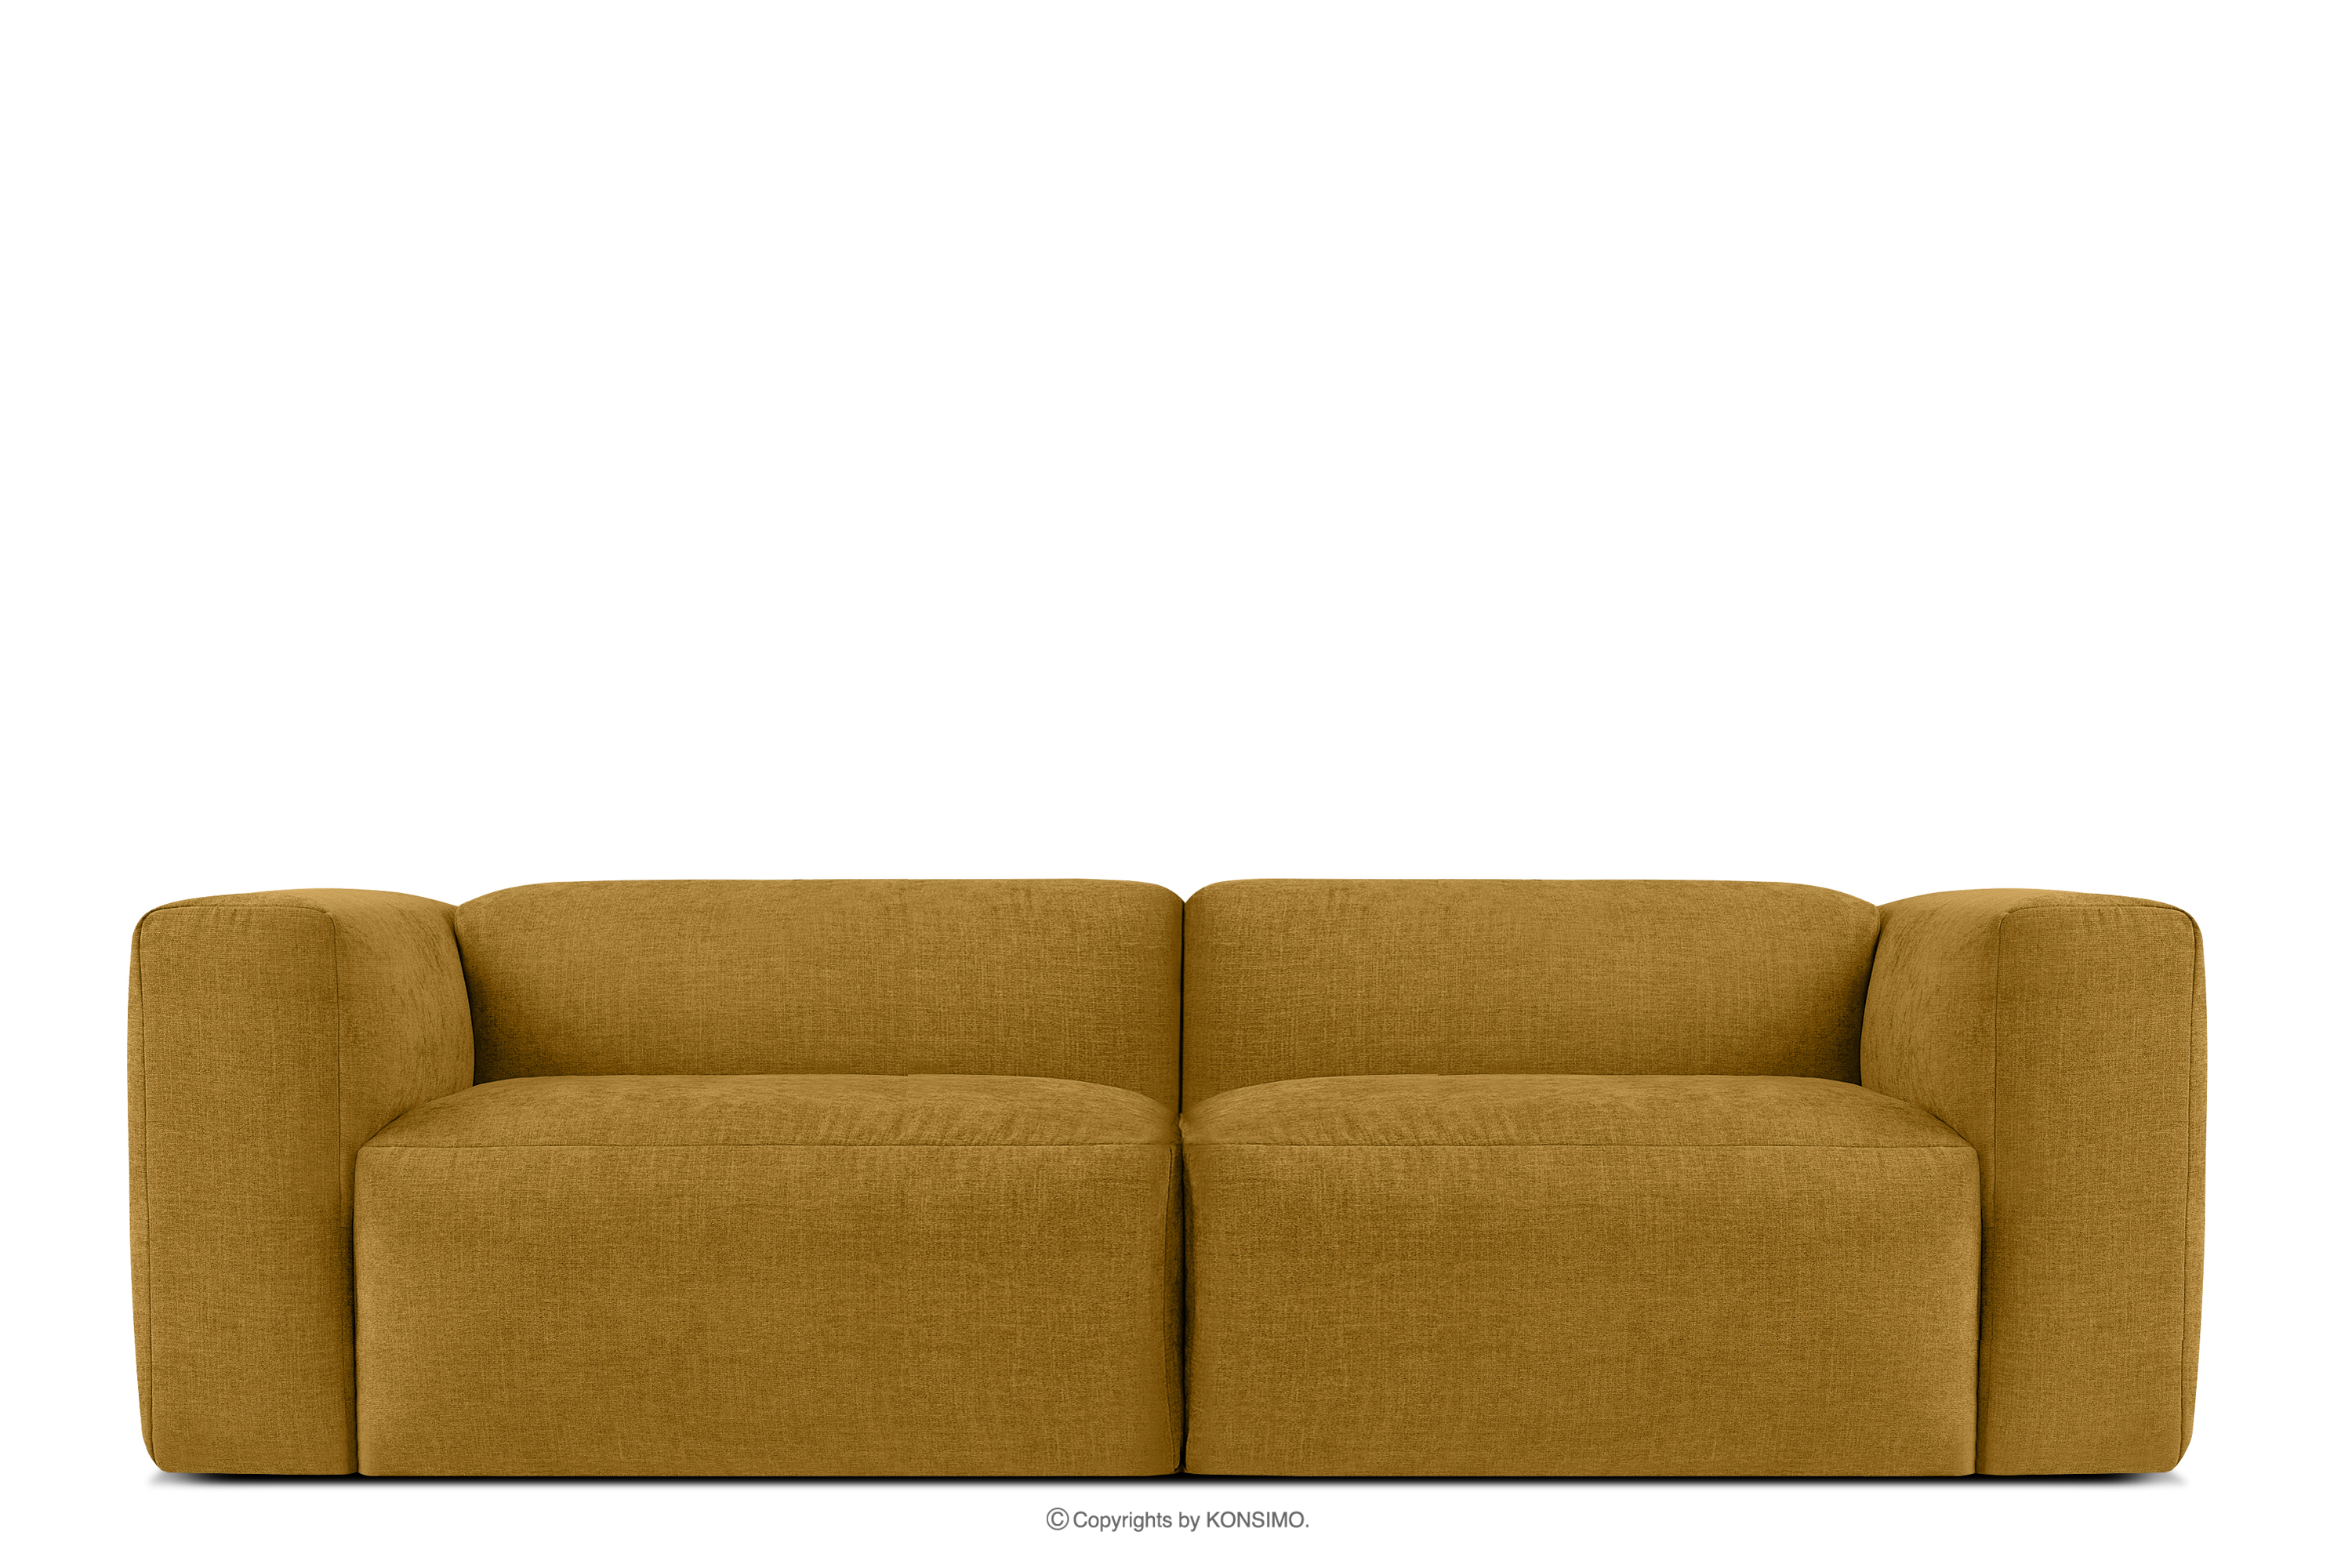 Medová pletená obývací sedačka obláček